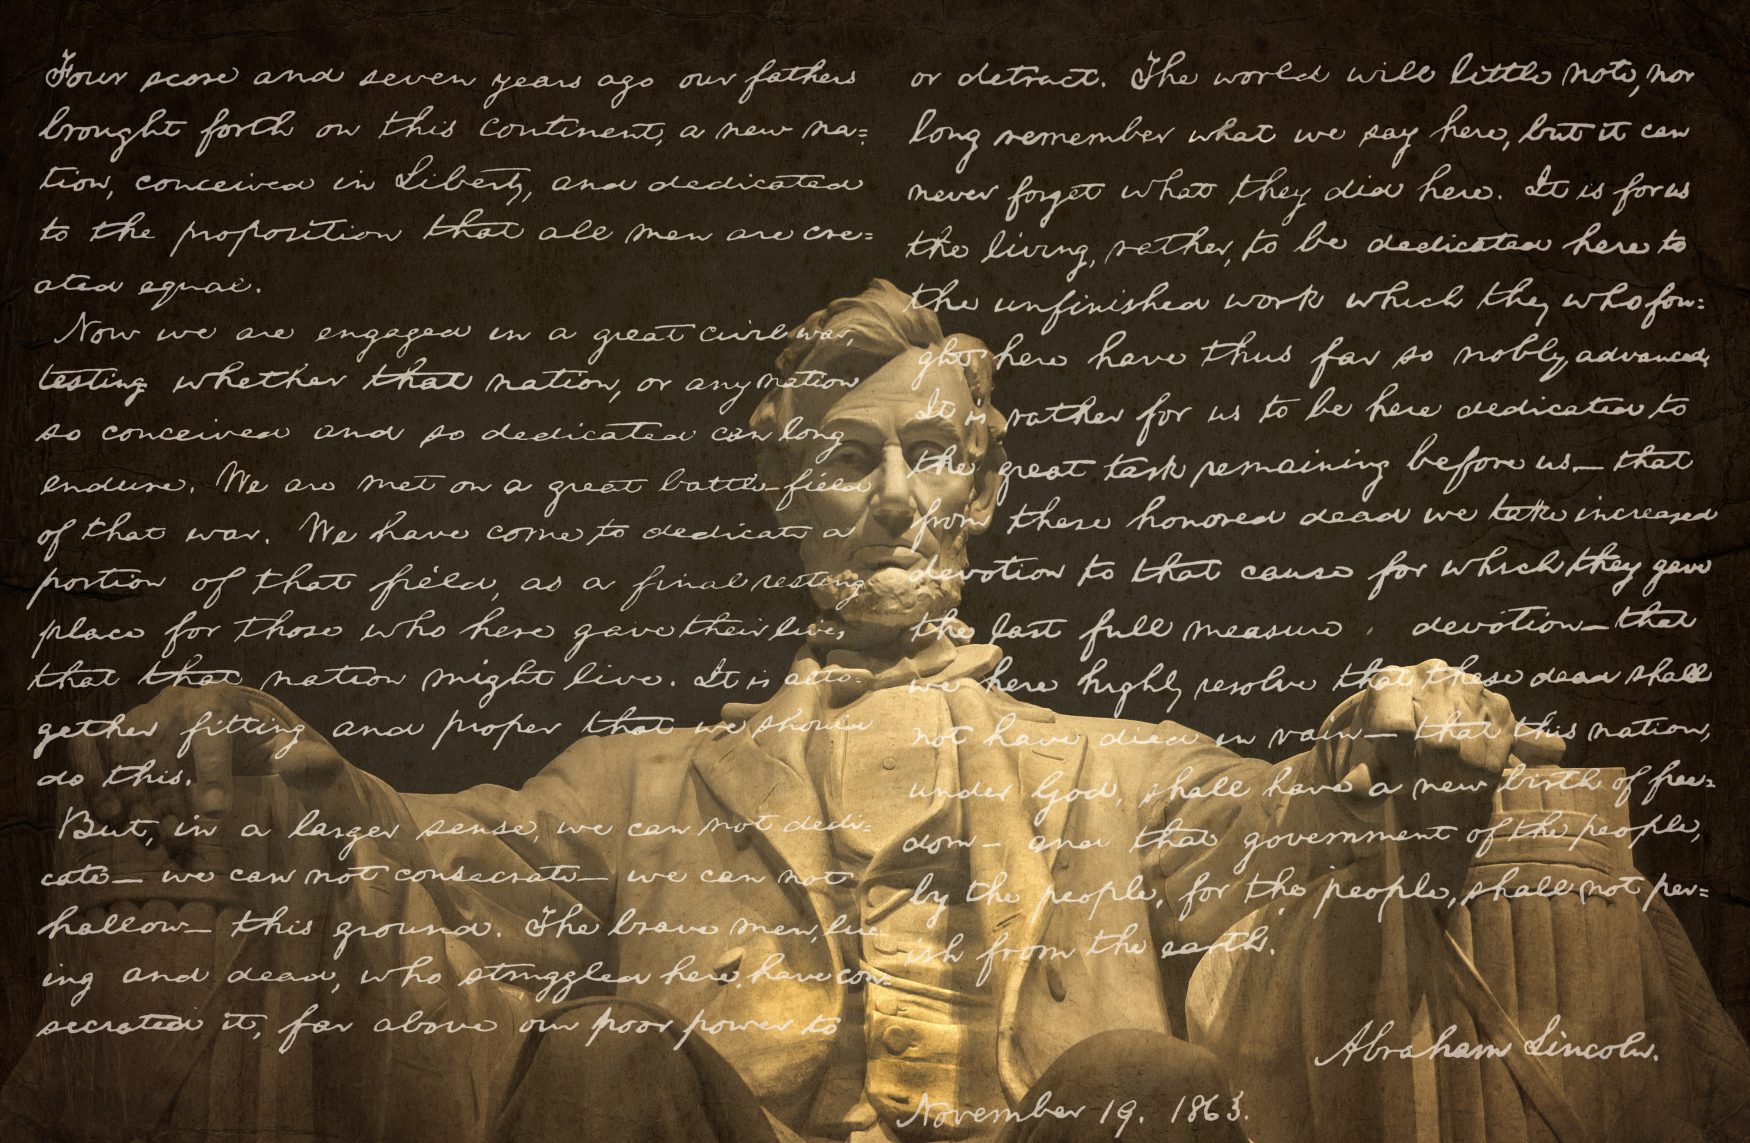 What was an Abraham Lincoln Failure?